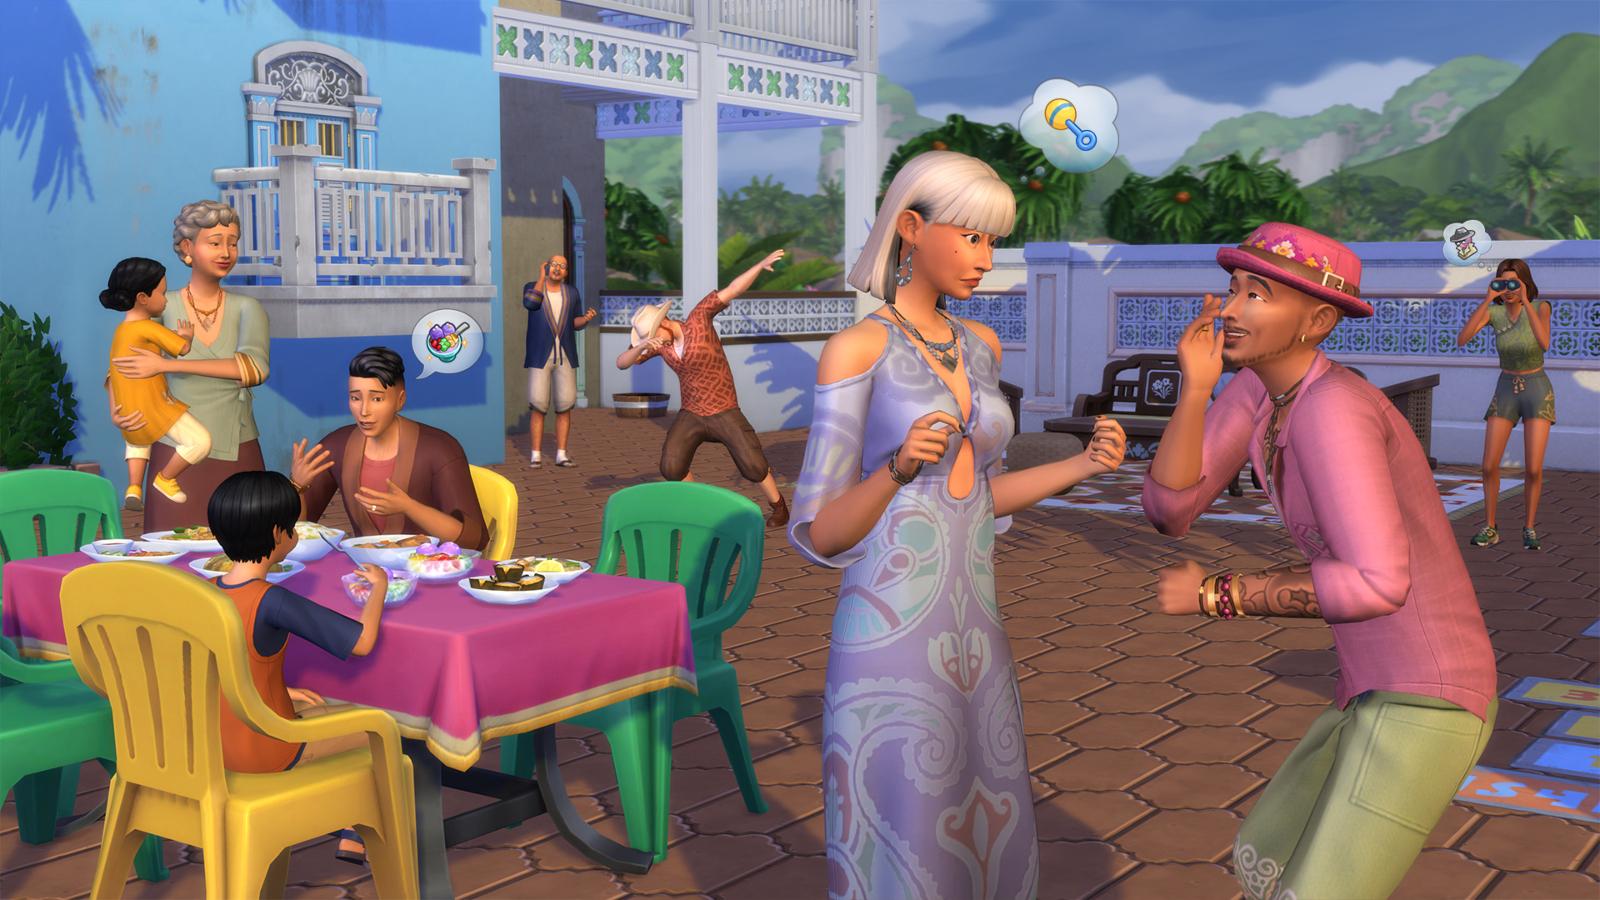 Among Us Mod - The Sims 4 Catalog